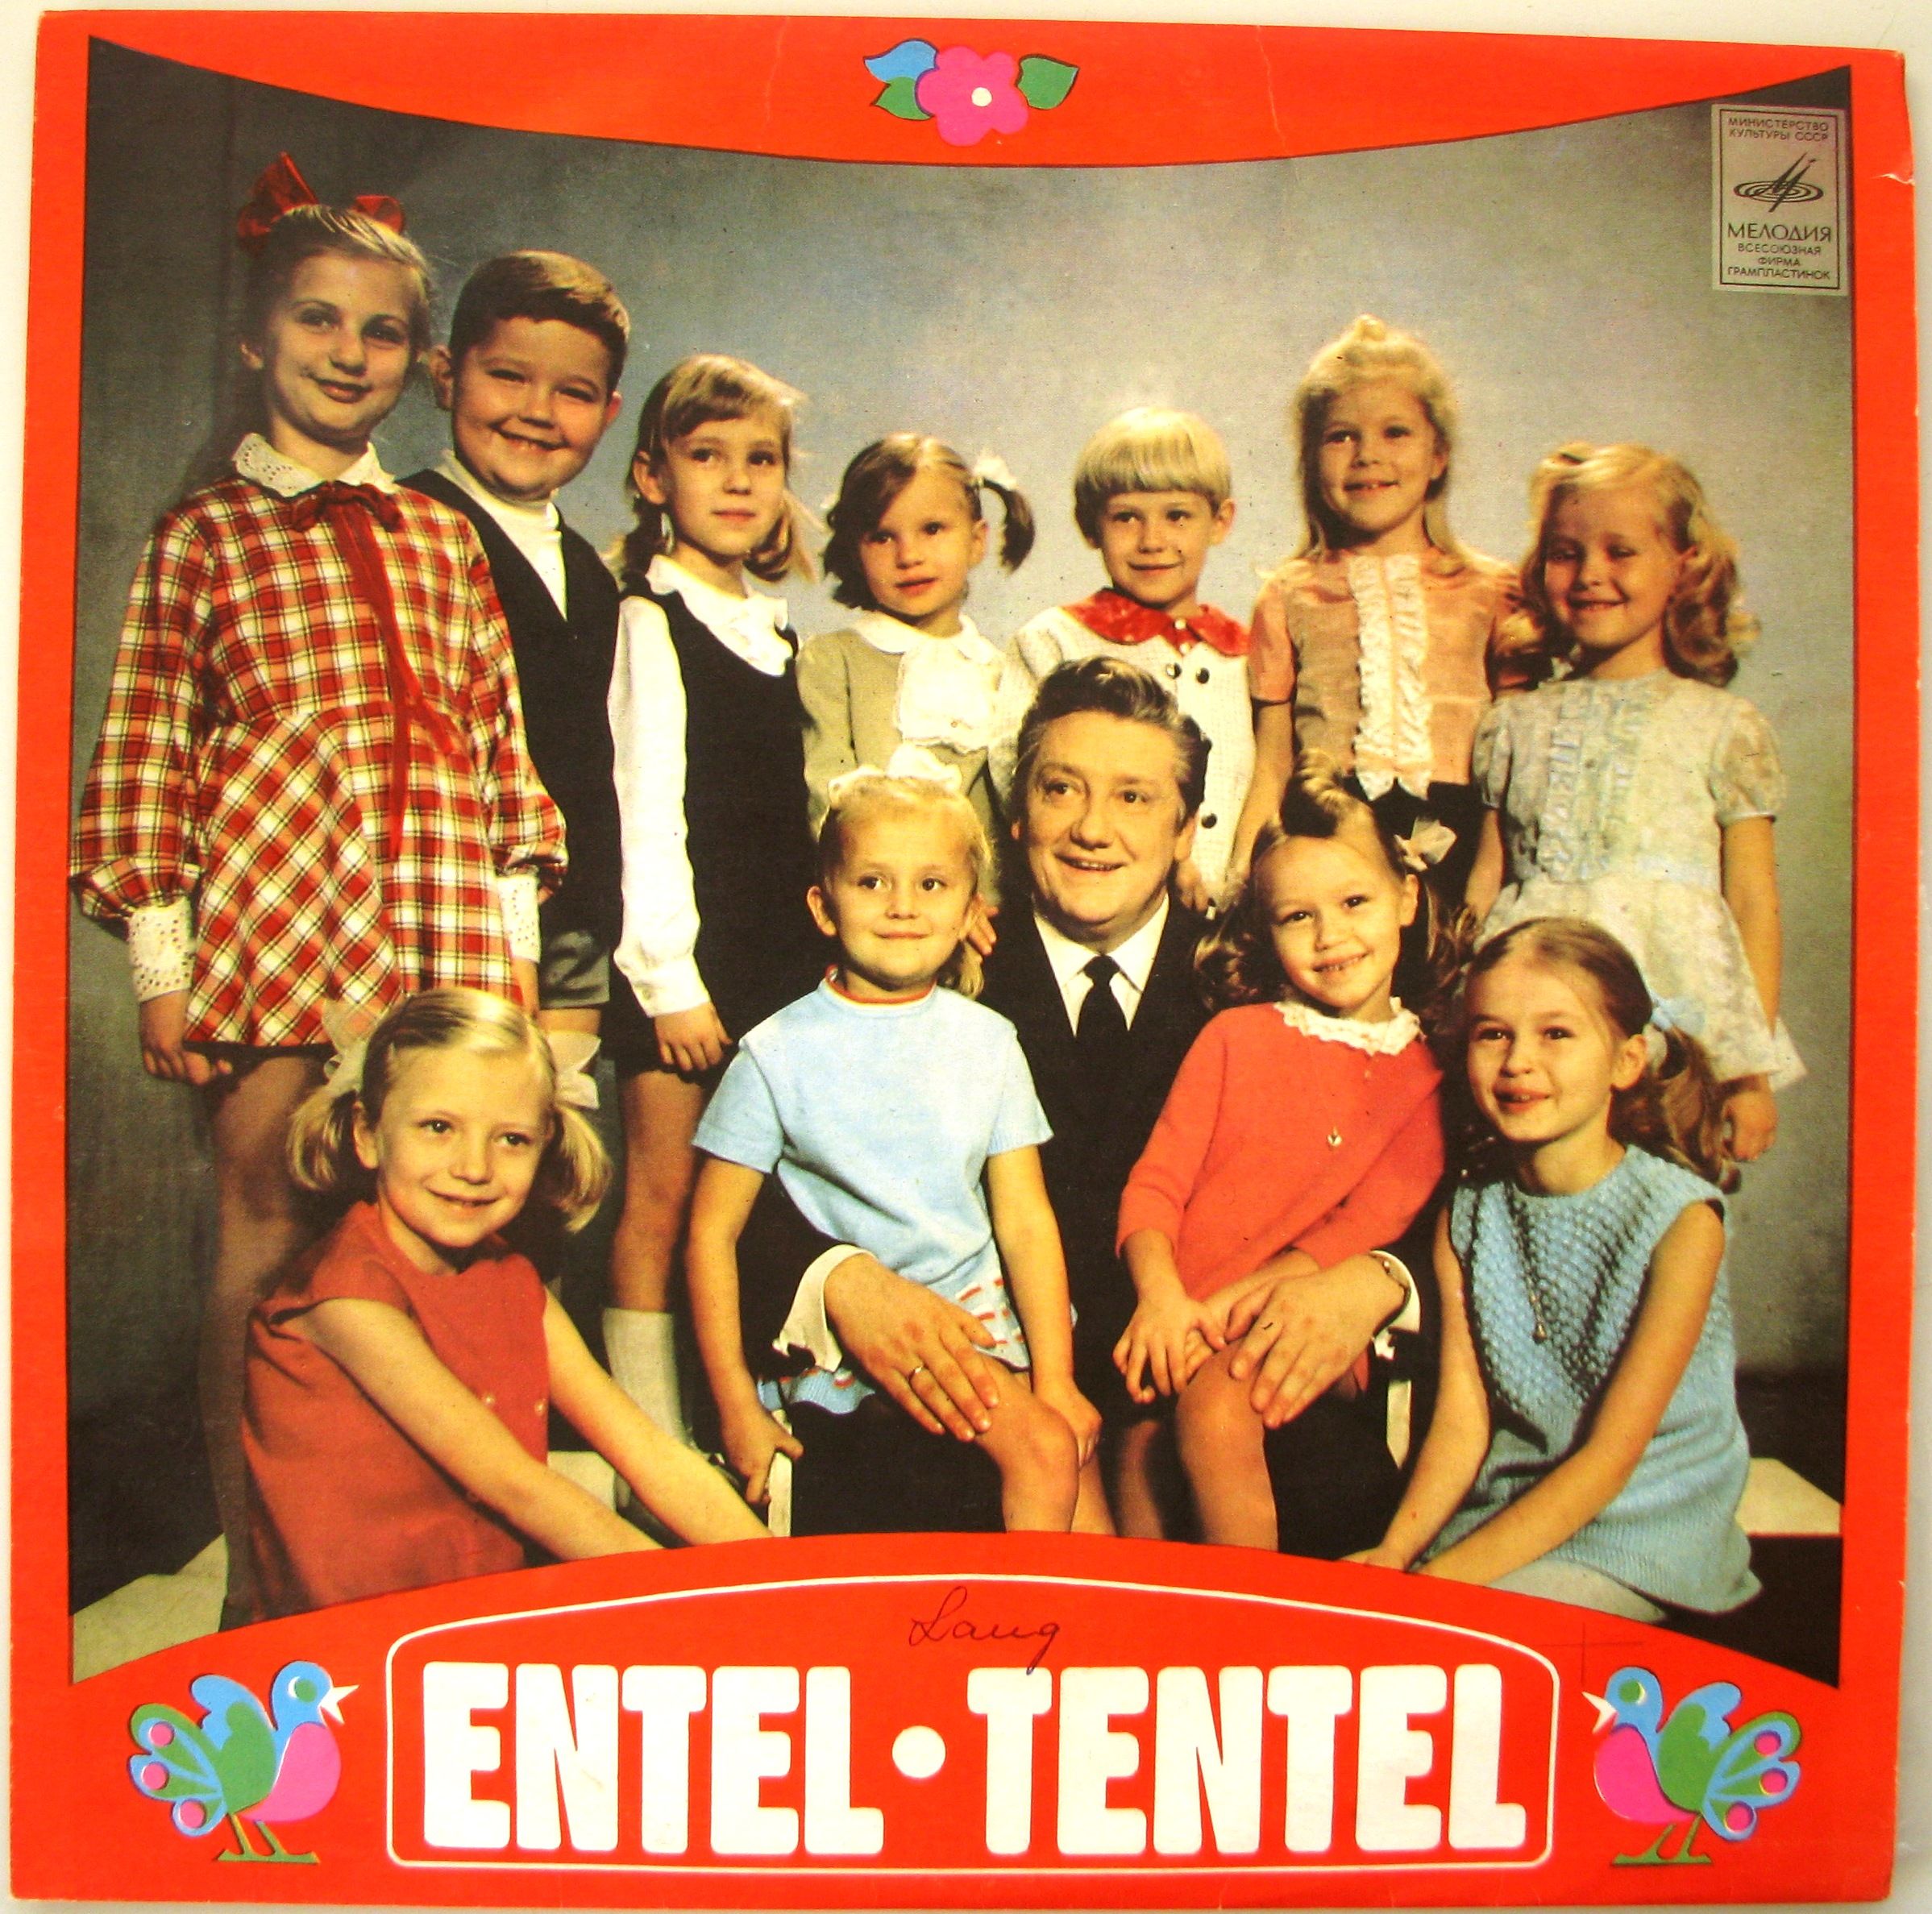 Entel-Tentel (Поёт ансамбль телевидения п/у К. Кикерпуу) - на эстонском языке